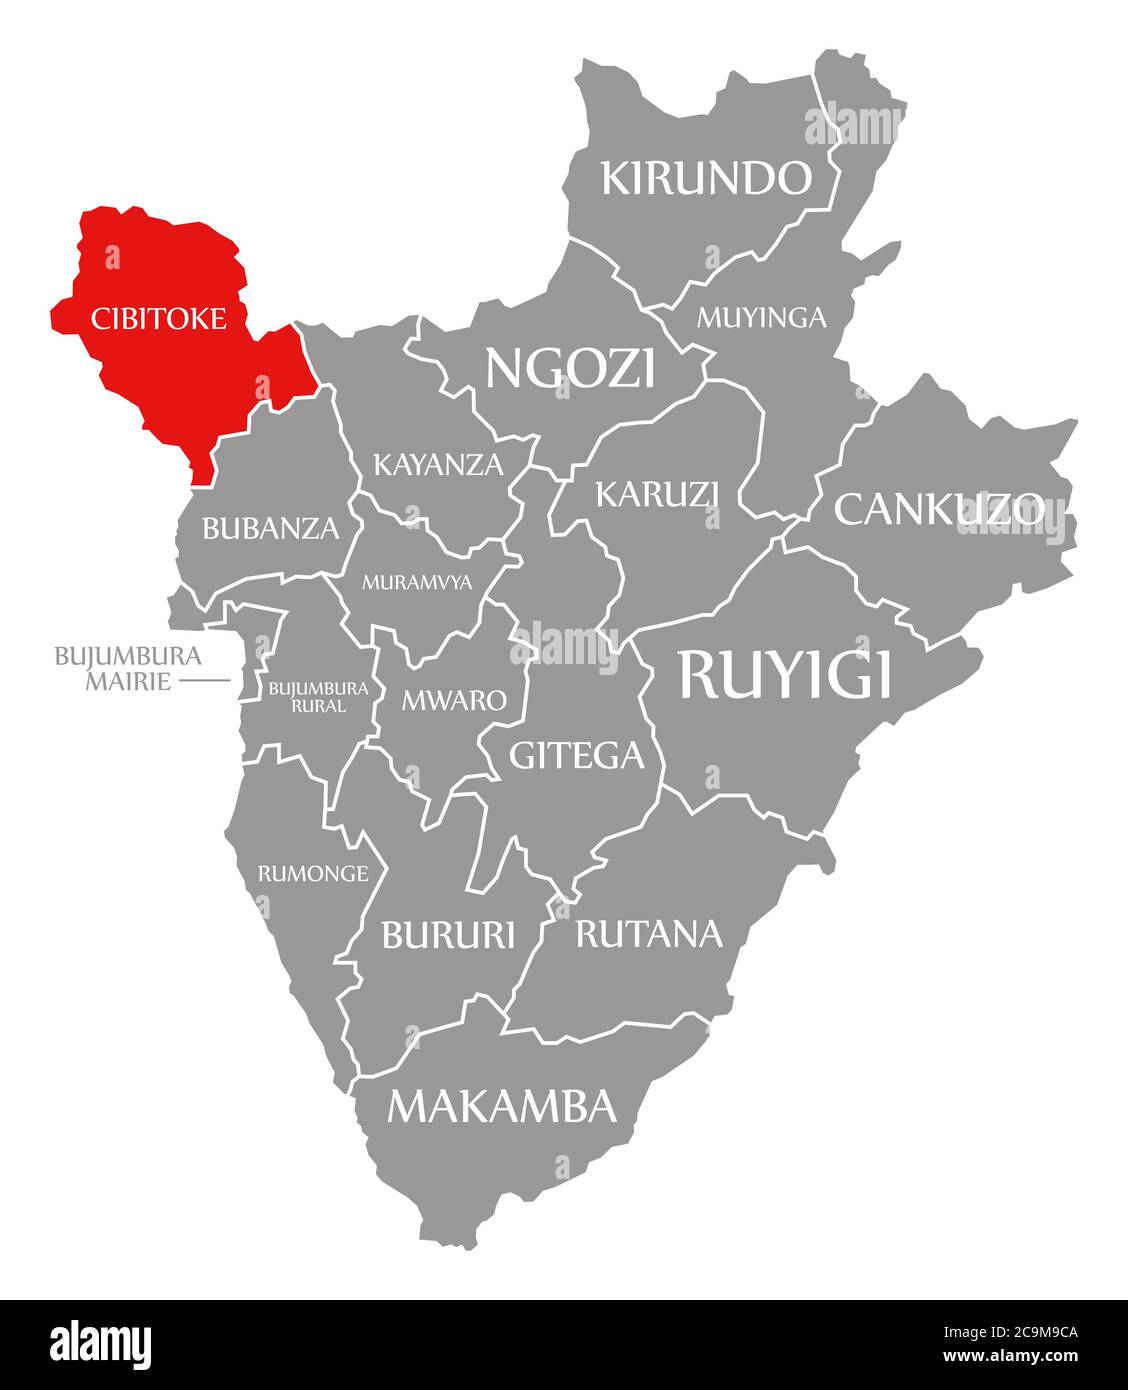 Cibitoke rot in Karte von Burundi hervorgehoben Stockfoto